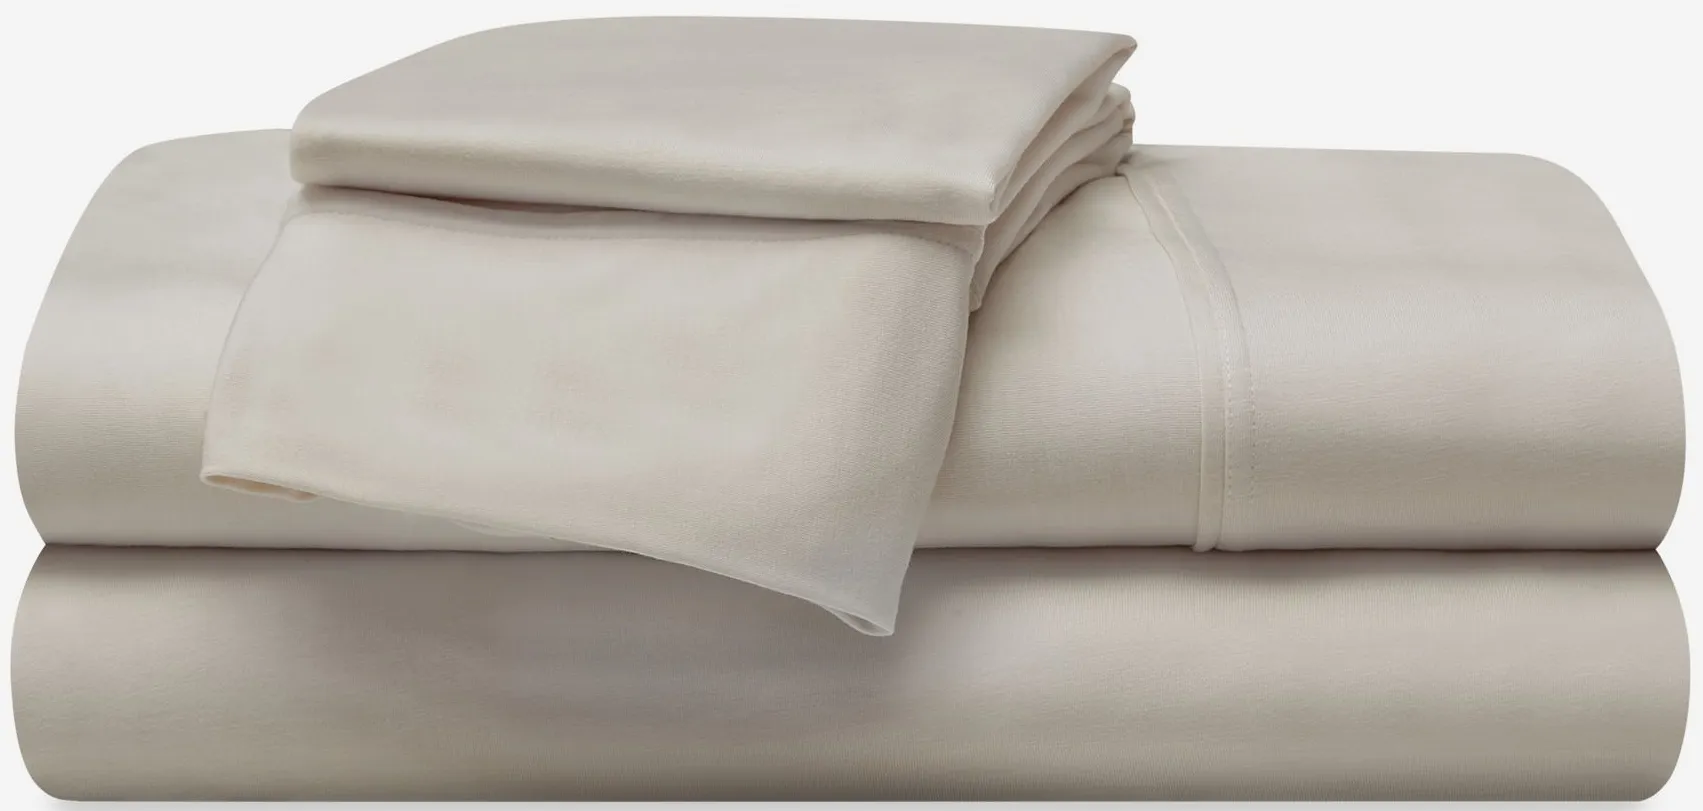 BEDGEAR Hyper-Wool Sheet Set in Medium Beige by Bedgear